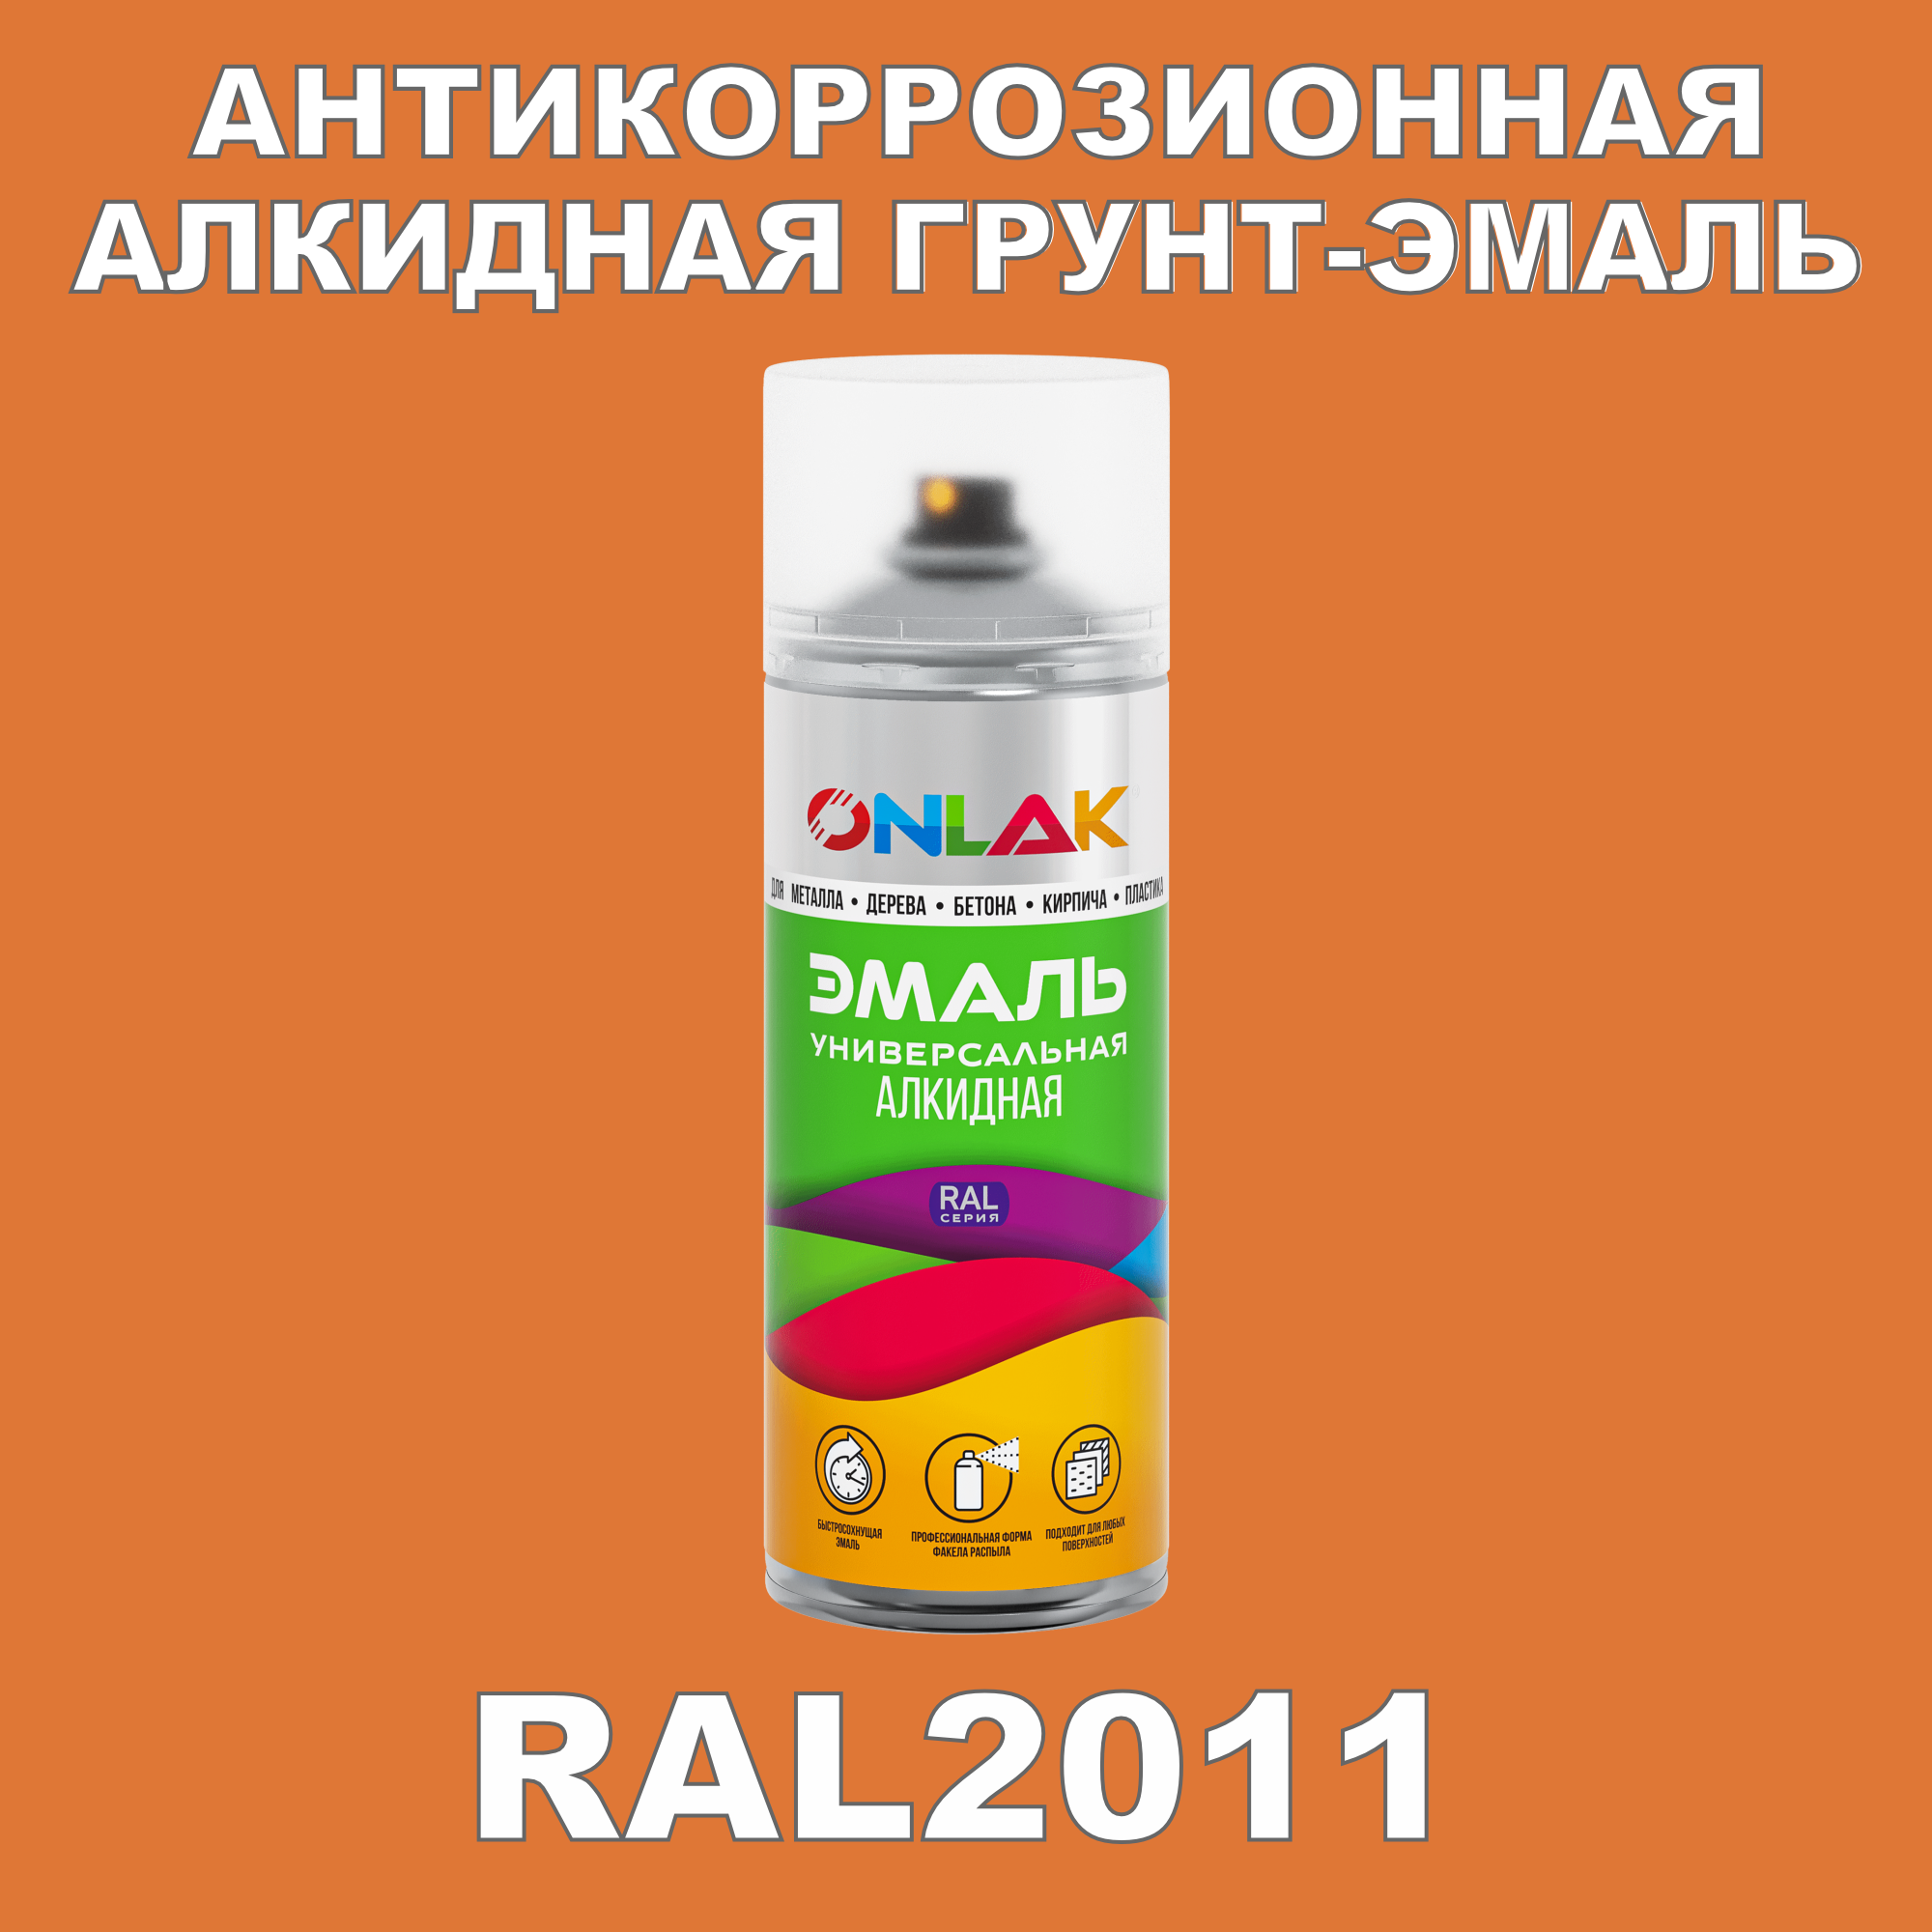 Антикоррозионная грунт-эмаль ONLAK RAL2011 полуматовая для металла и защиты от ржавчины